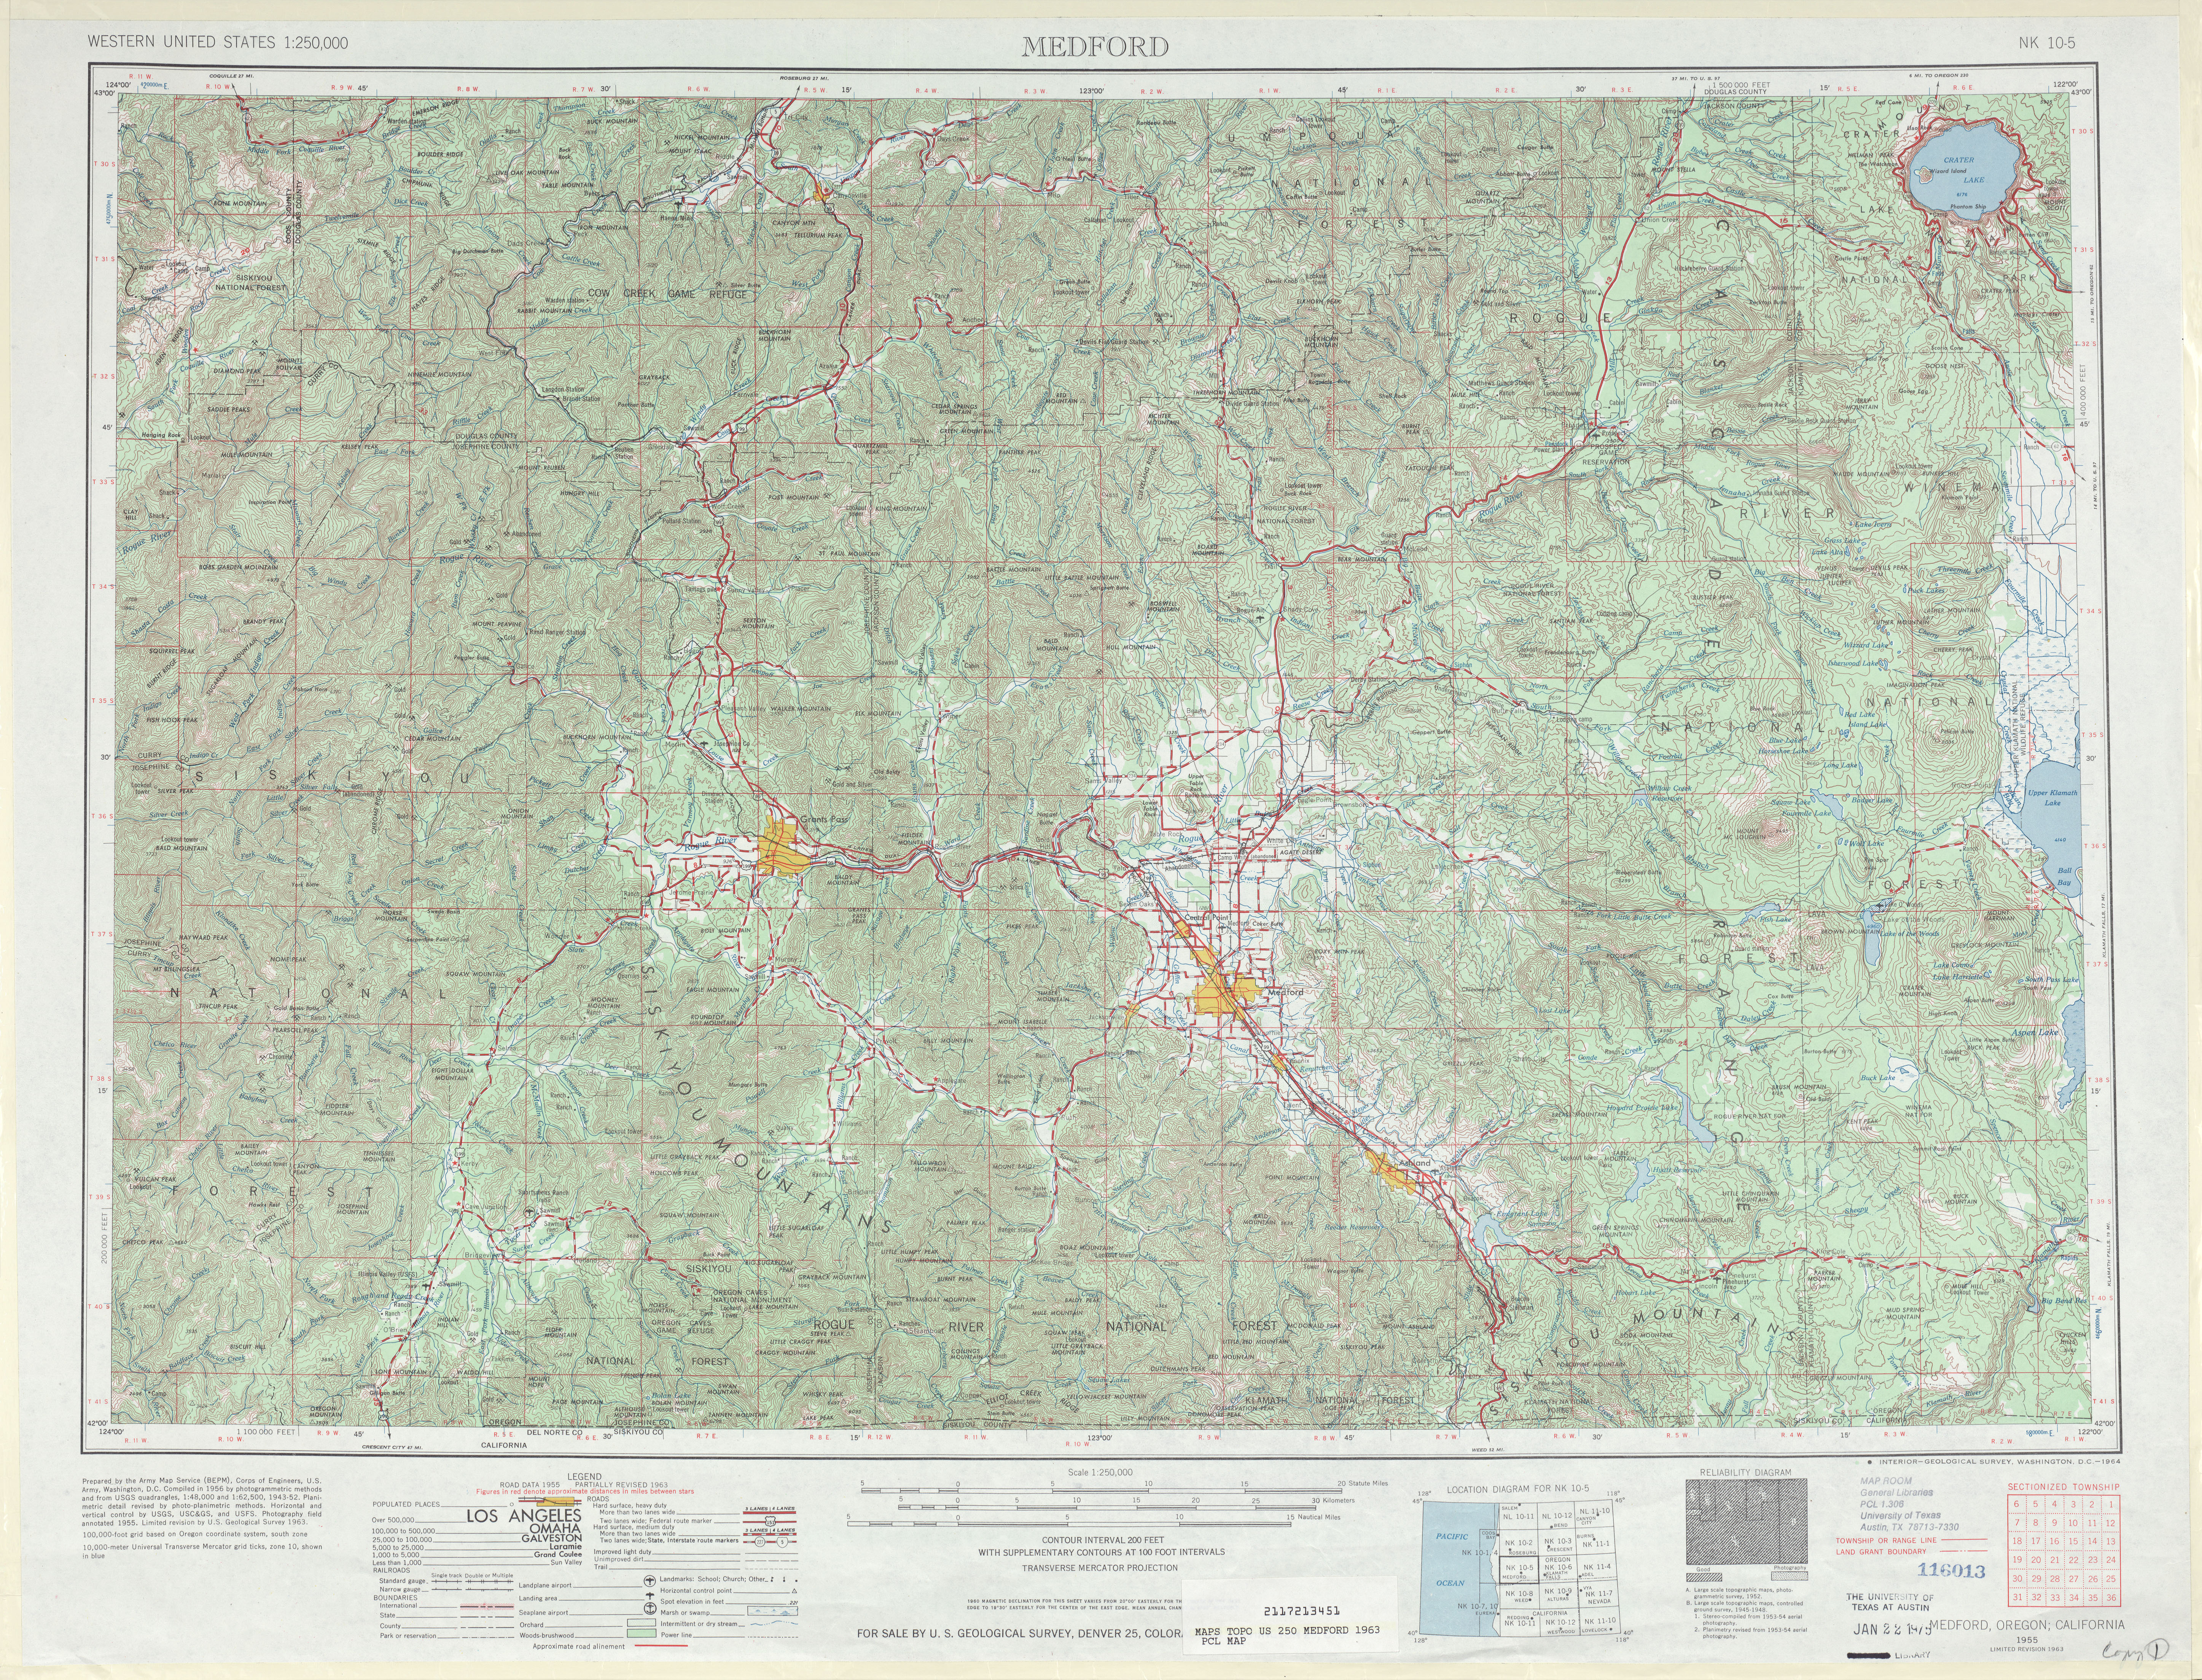 Hoja Medford del Mapa Topográfico de los Estados Unidos 1963